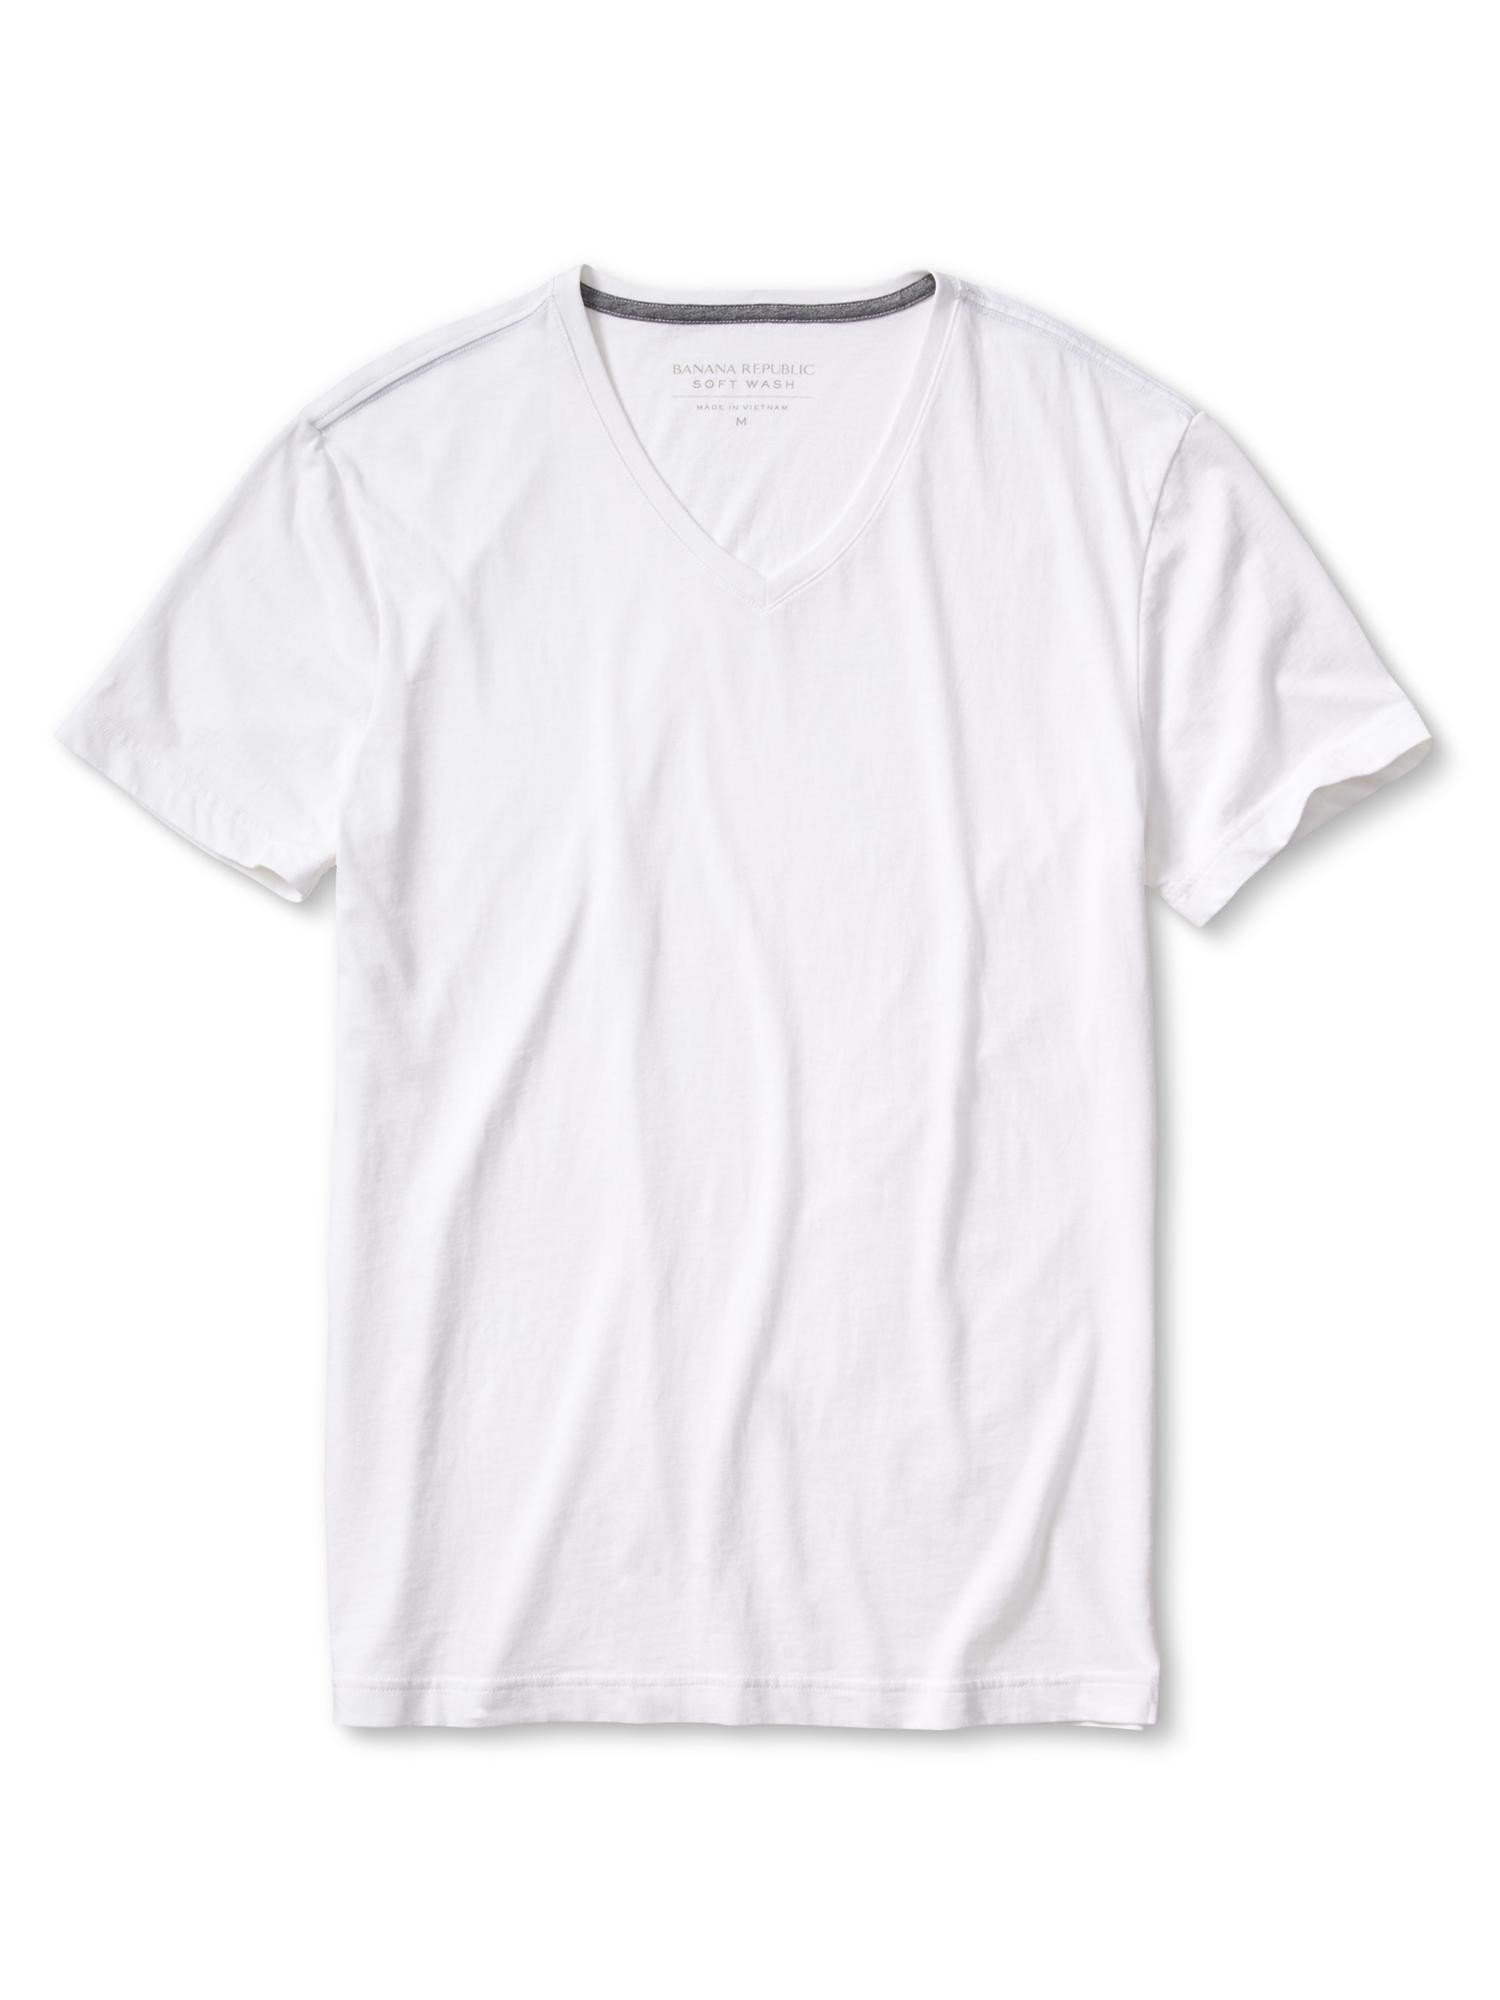 Soft-Wash V yaka t-shirt product image